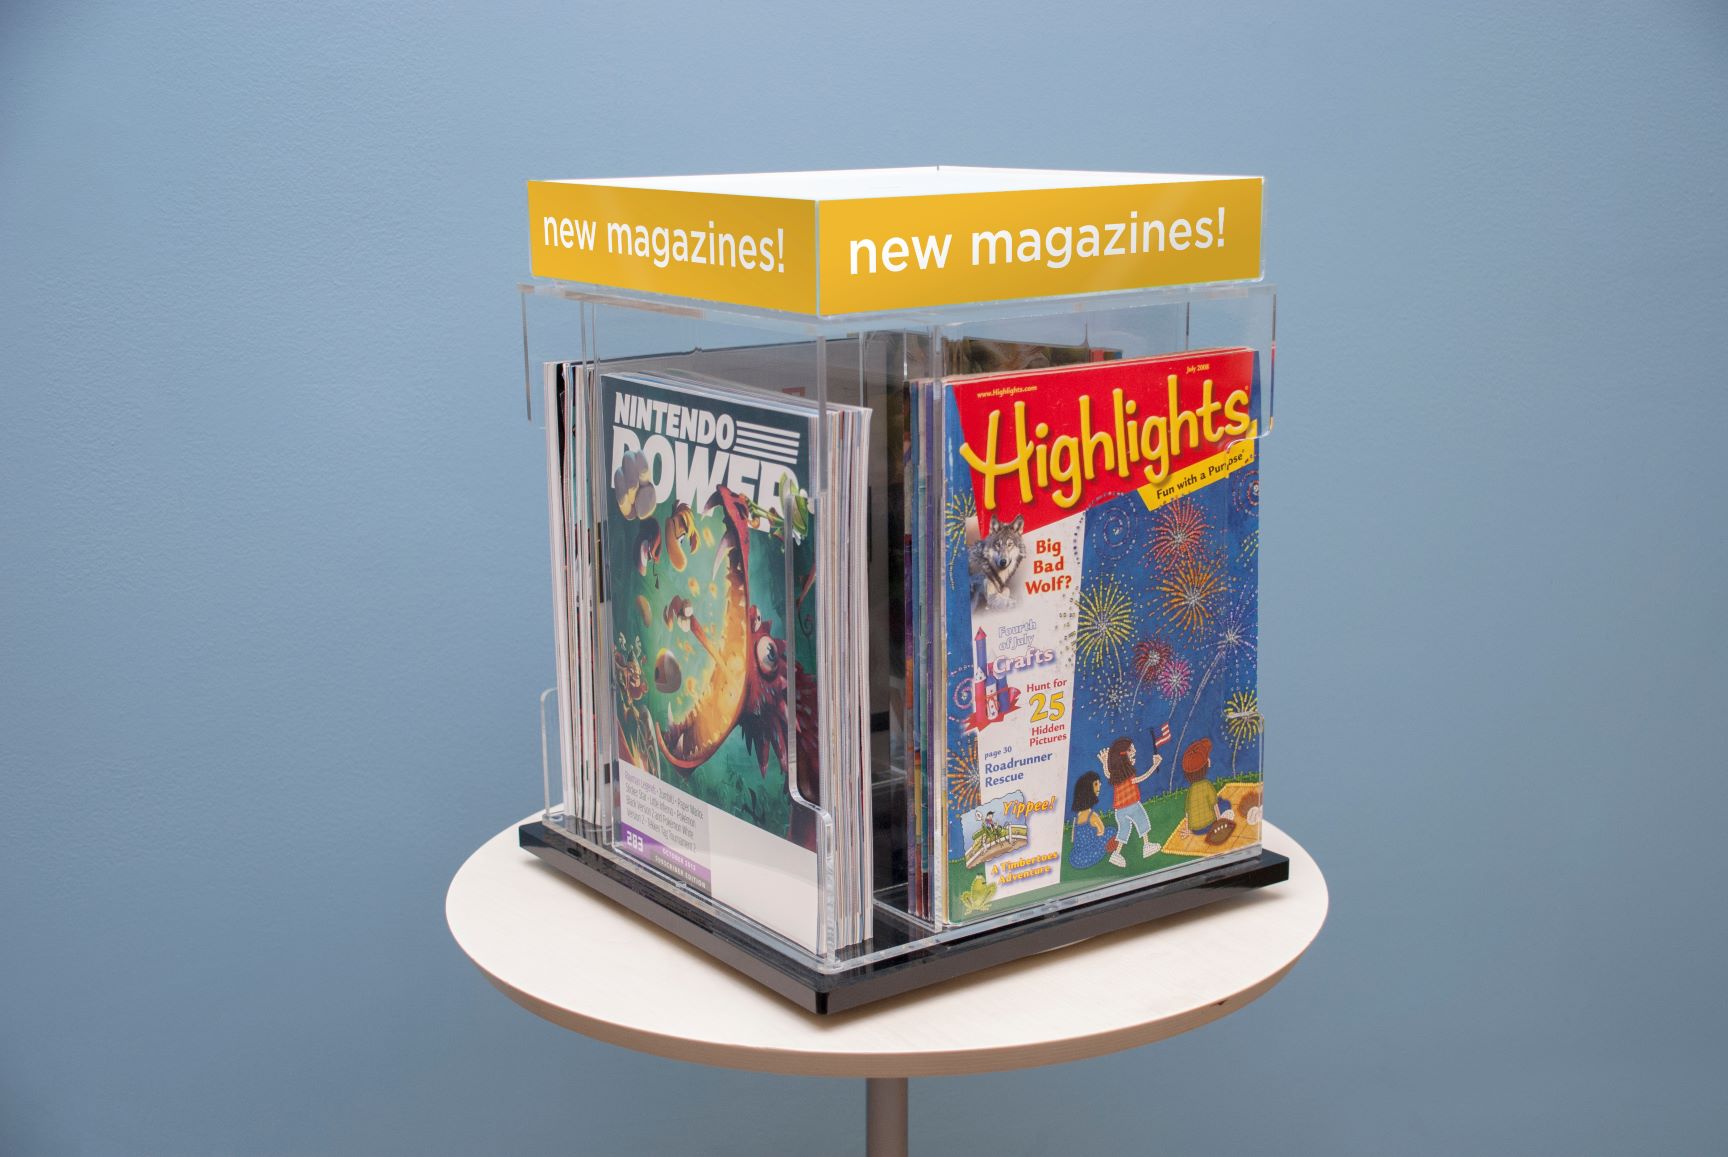 magbox Storage - Magazine, Newspaper and Literature Displays